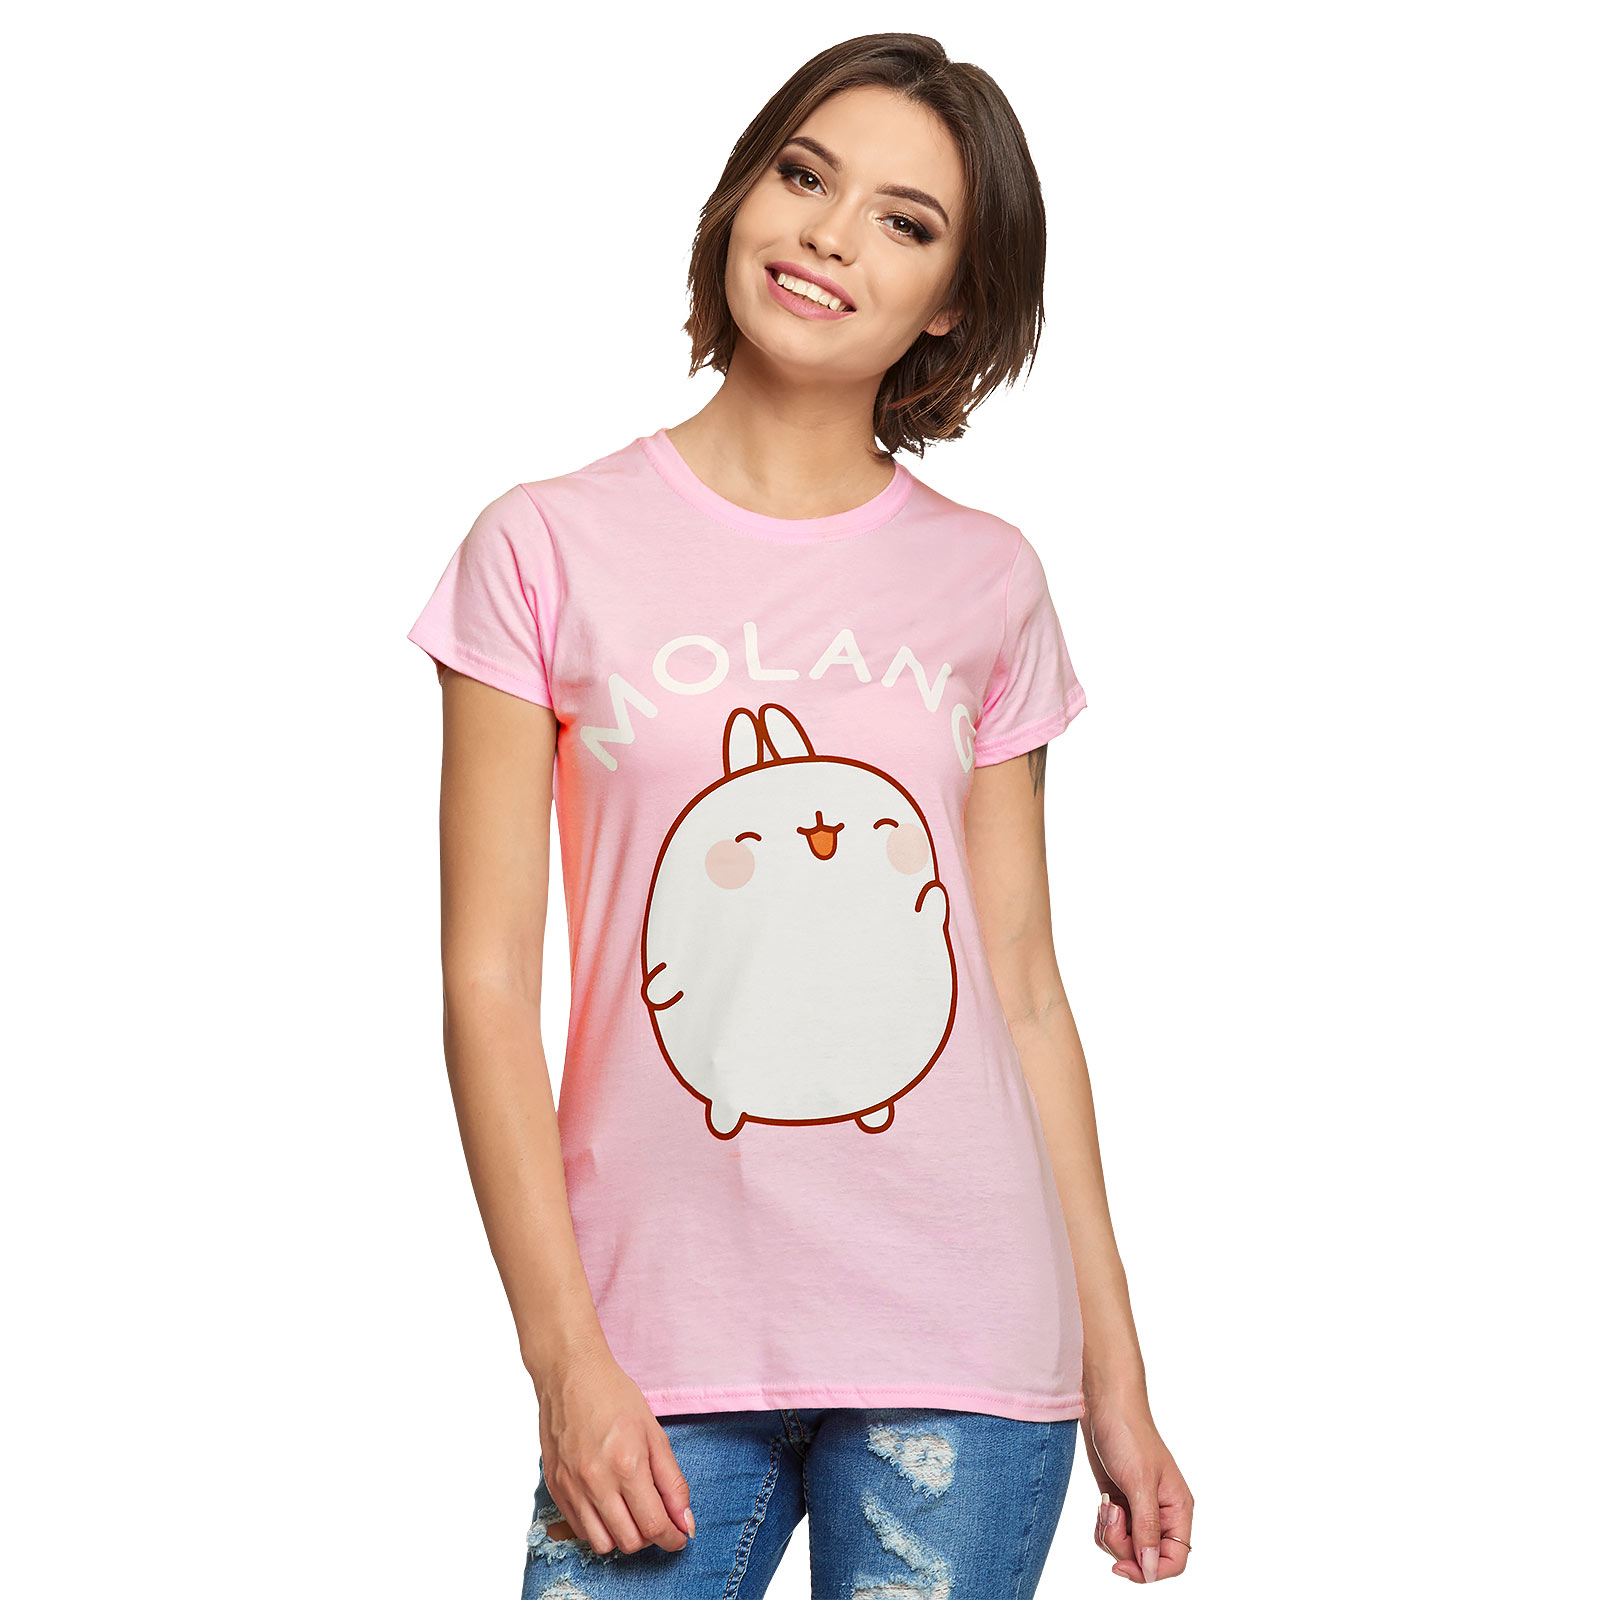 Molang - Happy T-Shirt Damen rosa